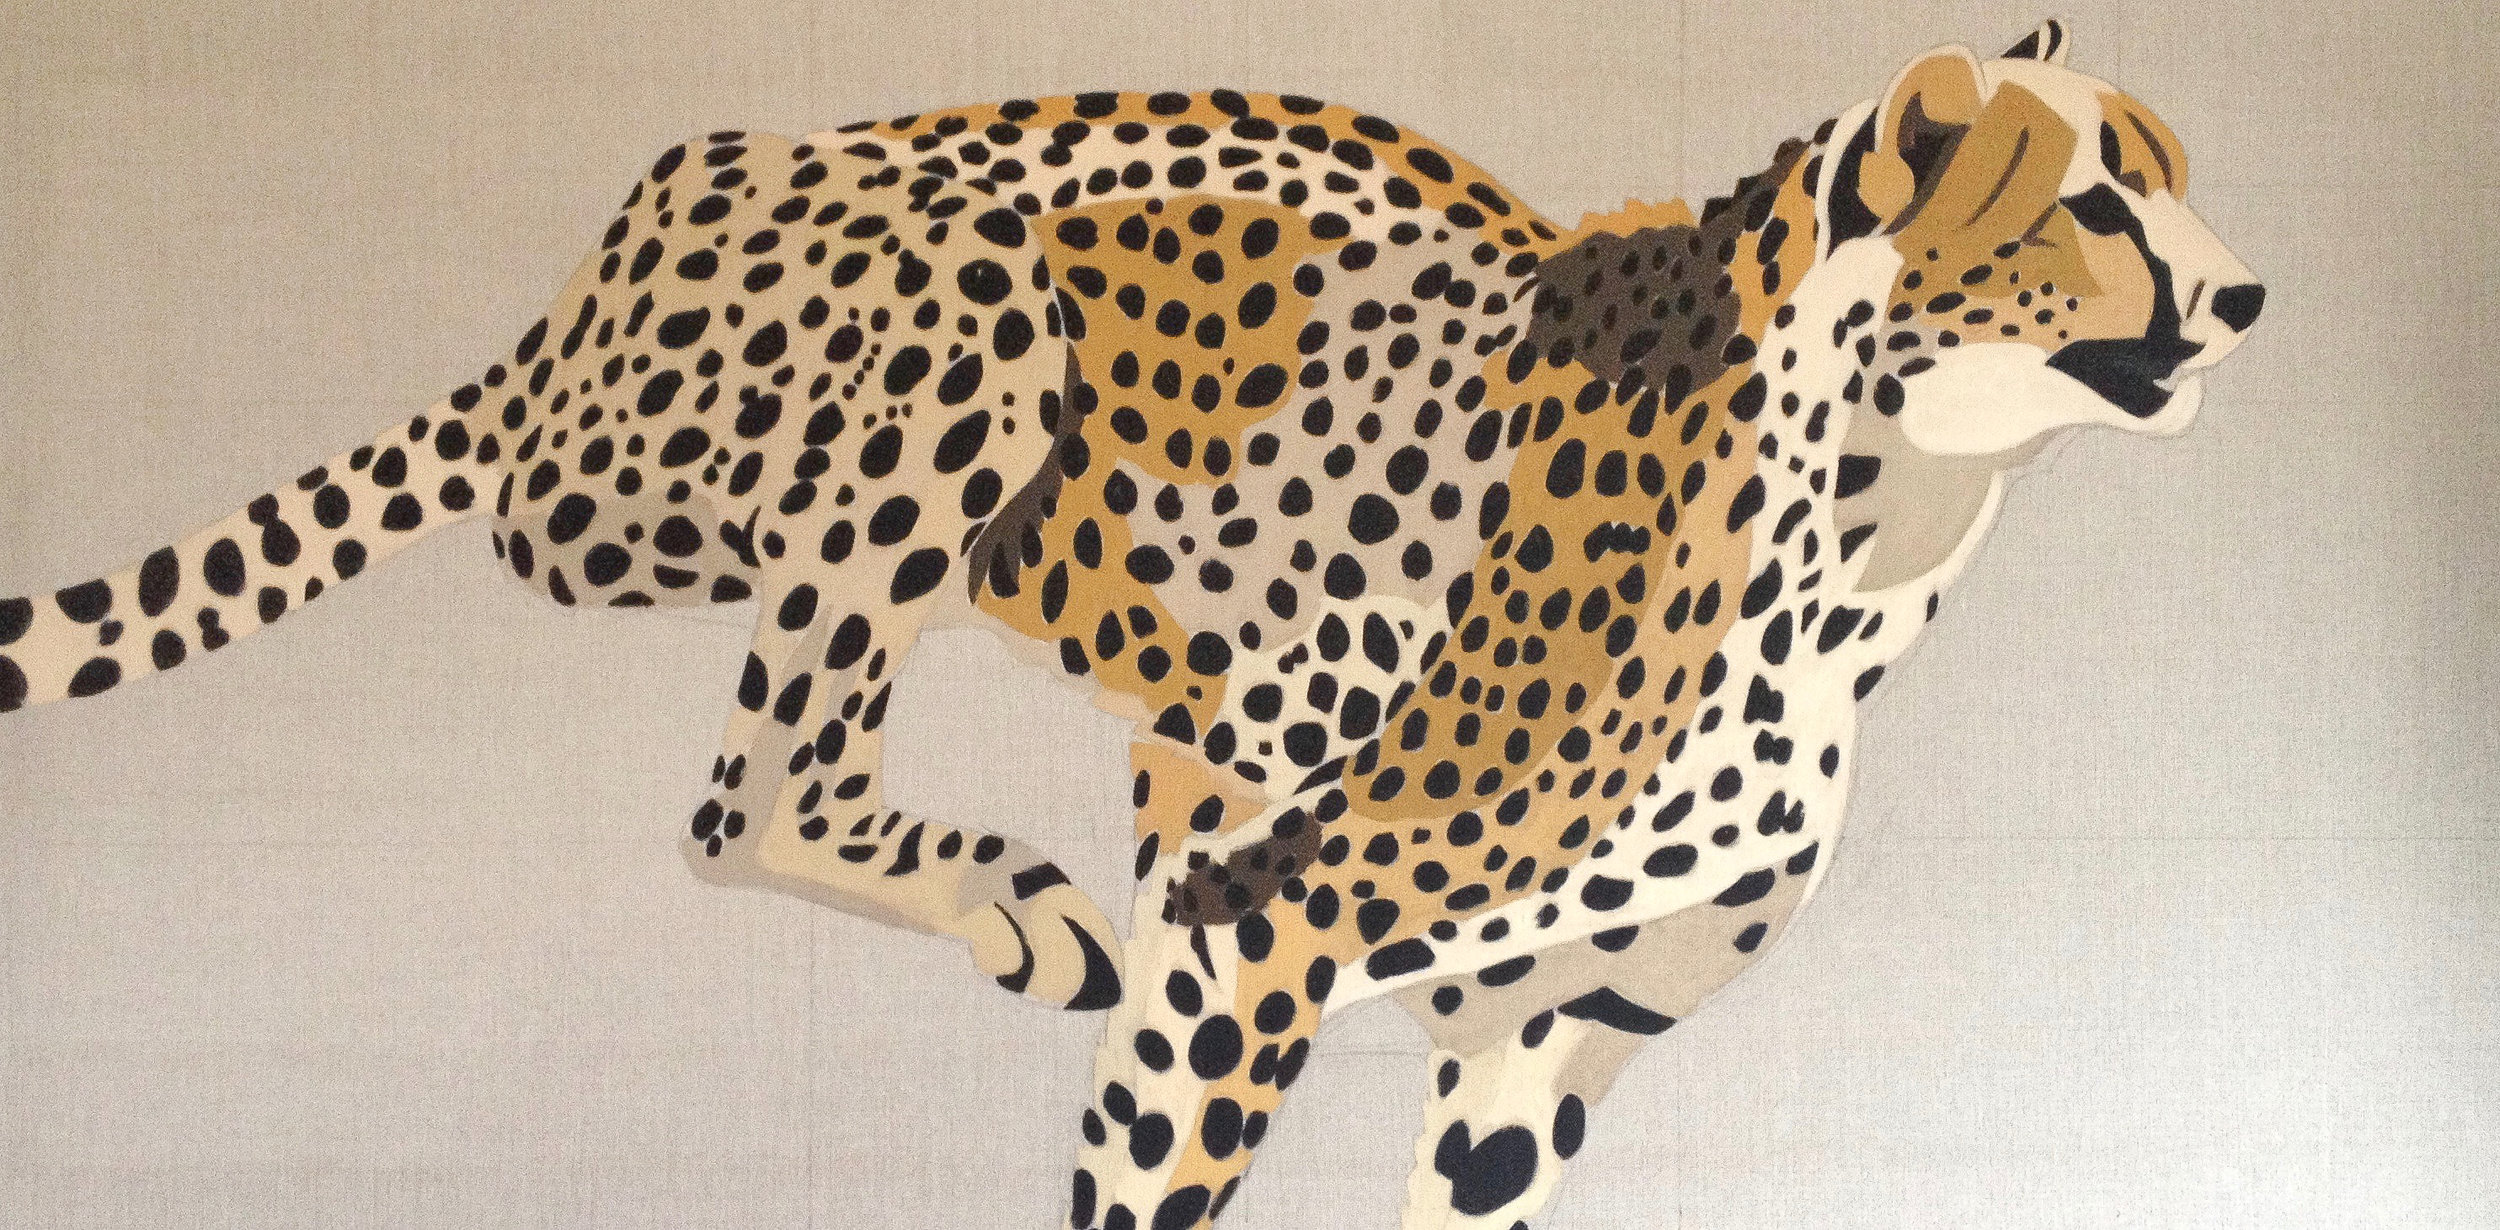 Running Cheetah Painting 1-4.jpg